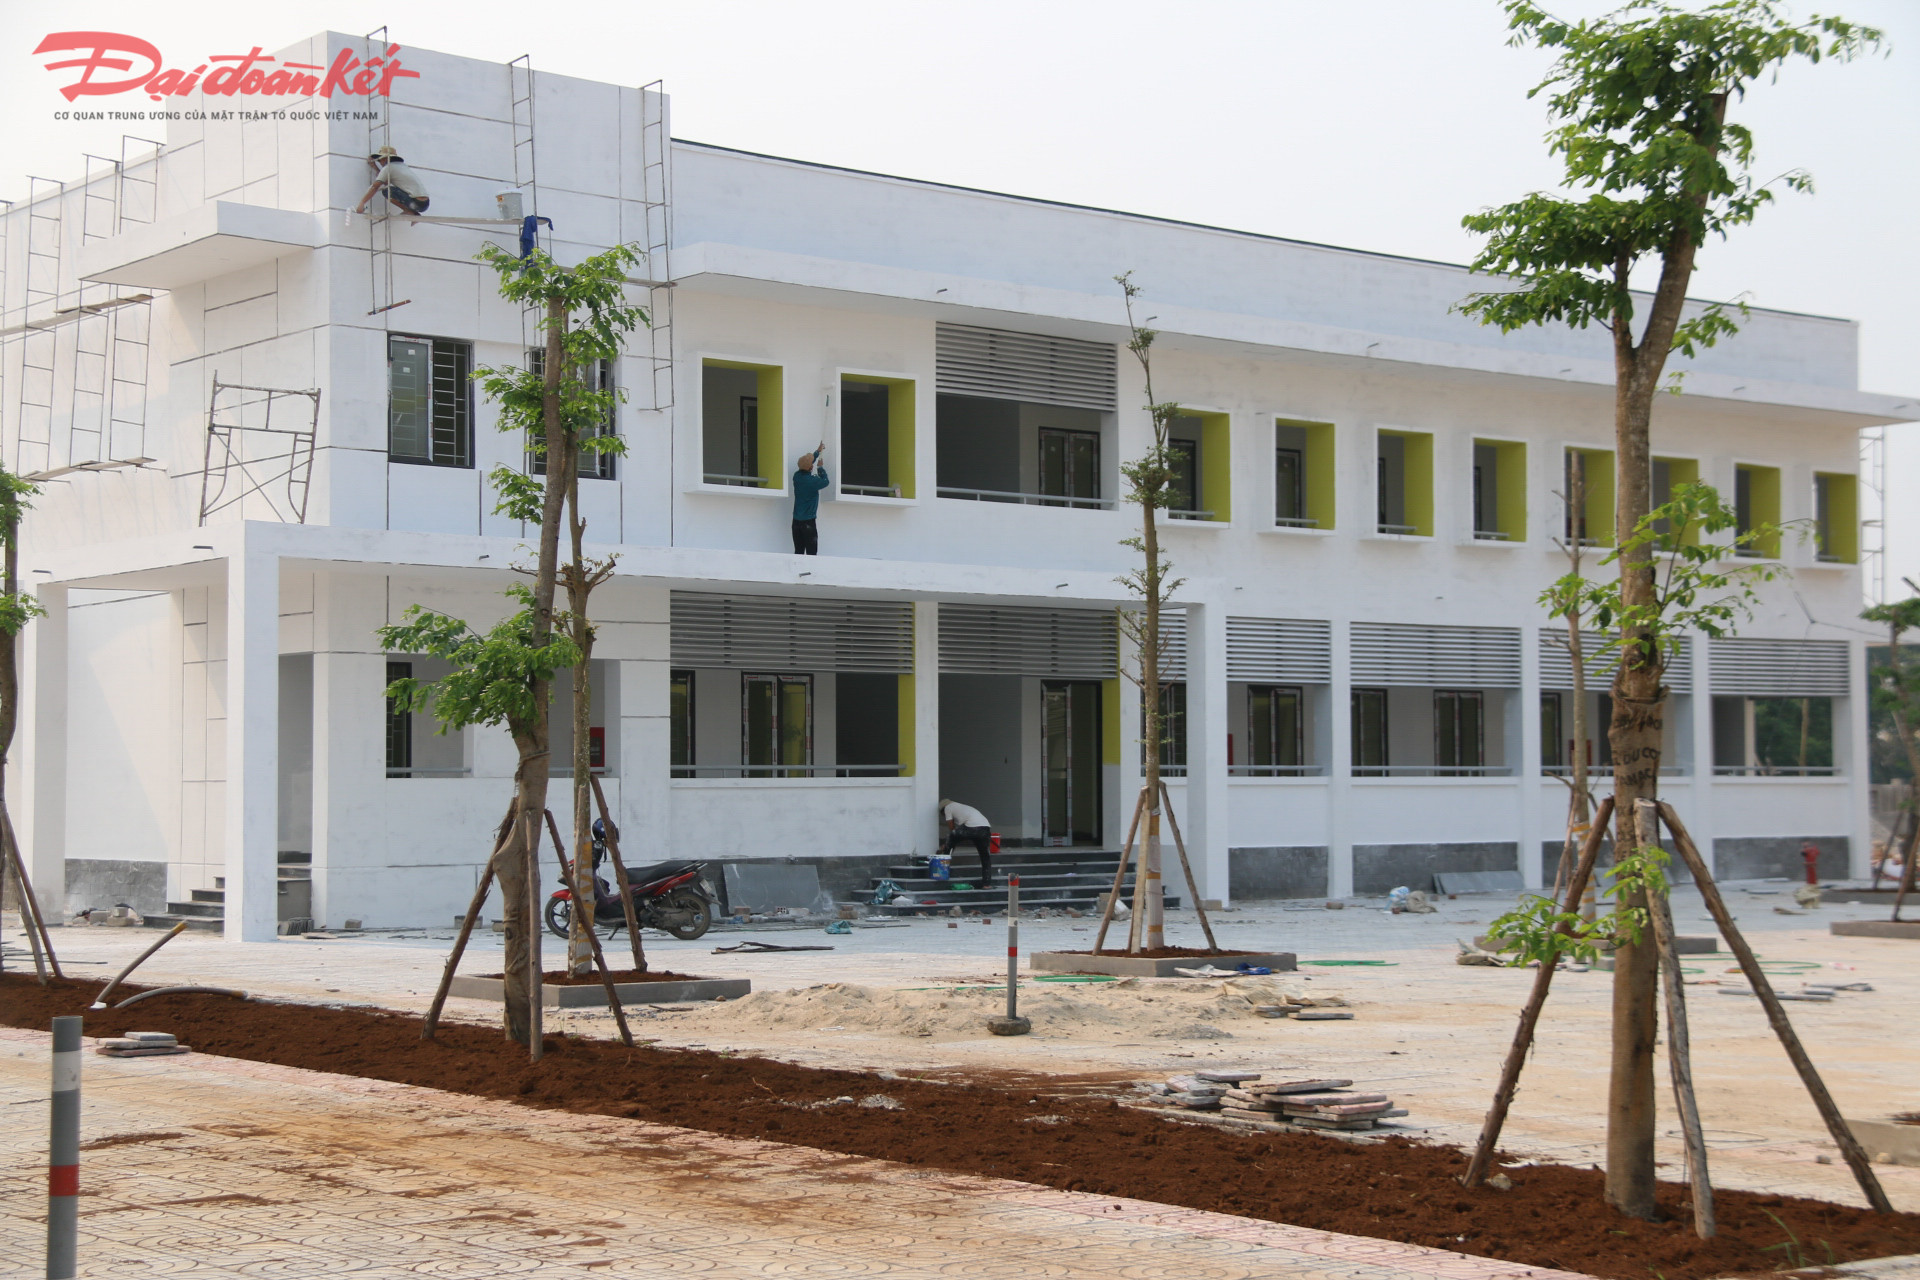 UBND TP Đông Hà yêu cầu chủ đầu tư đôn đốc nhà thầu đẩy nhanh tiến độ thi công và hoàn thành công trình trường THCS Nguyễn Trãi vào tháng 5/2023.